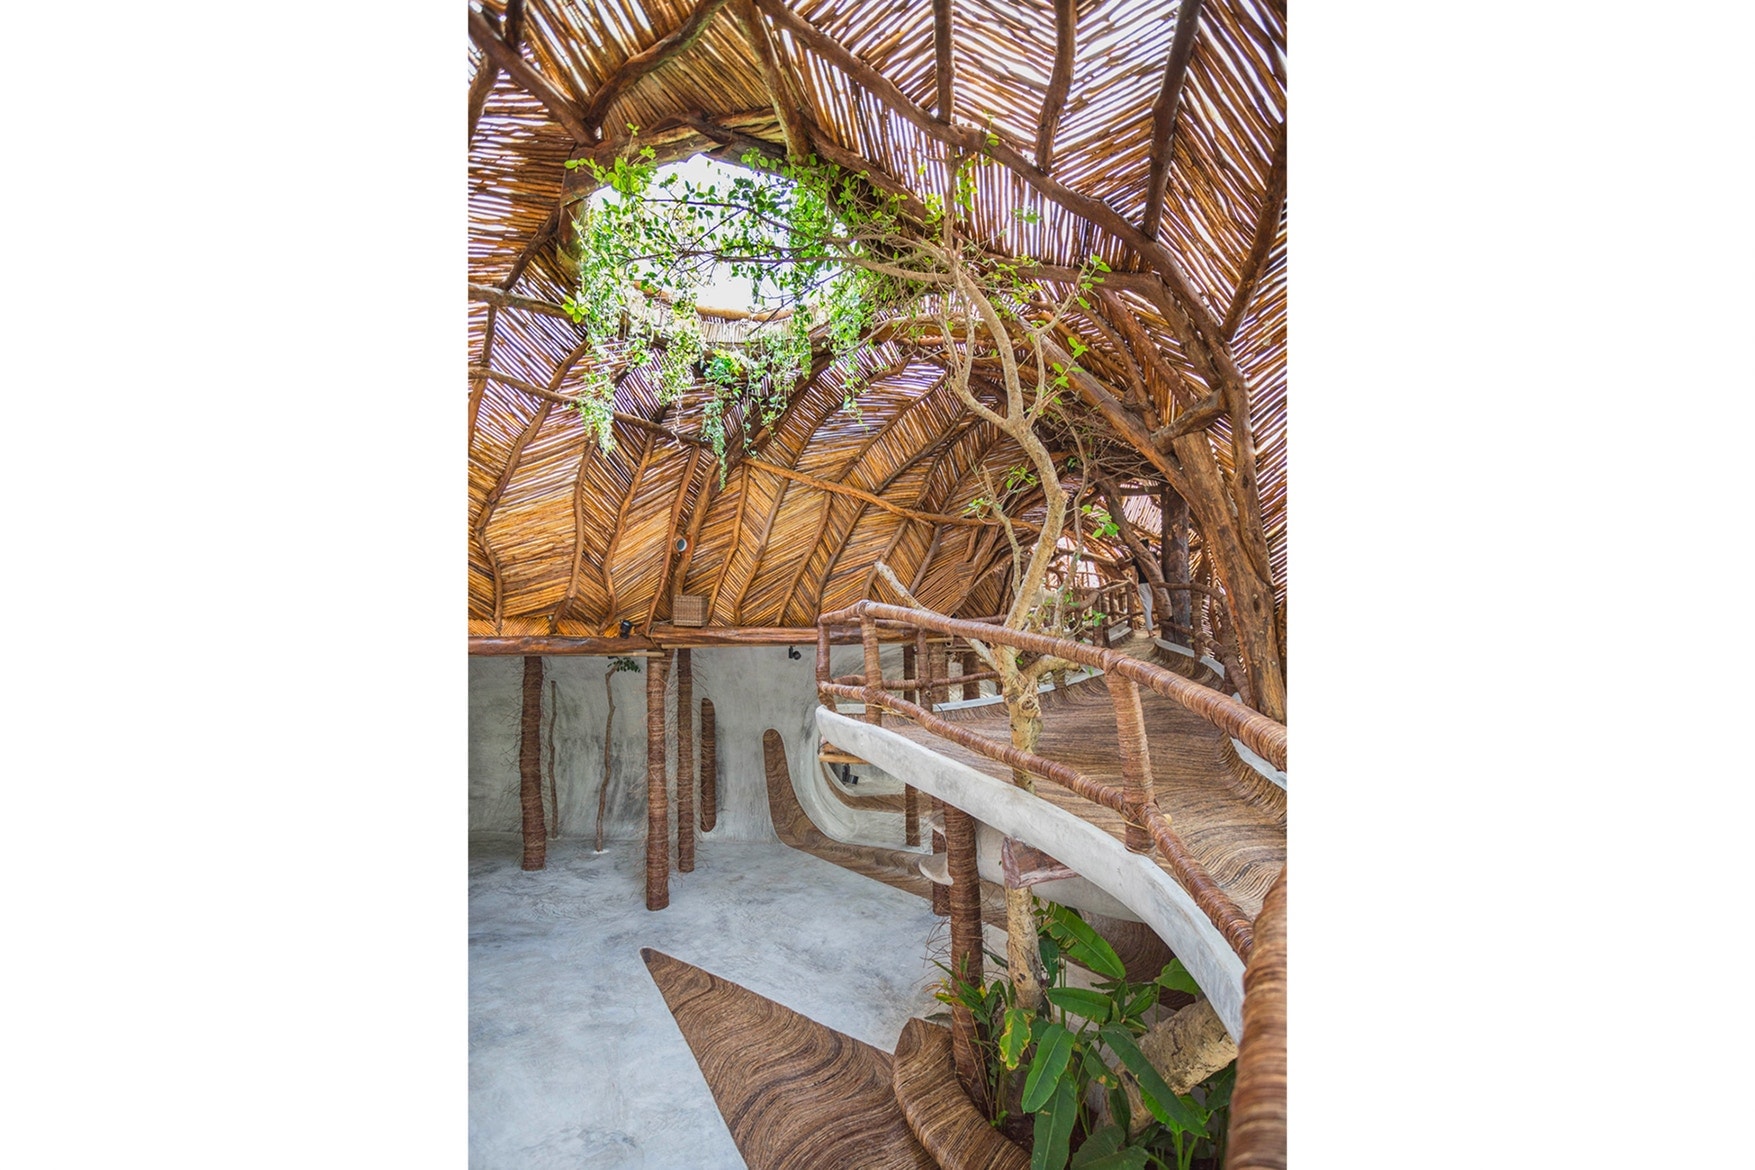 ジブリの世界を彷彿とさせる自然派アートギャラリー IK Lab が完成 展示作品より目立ってしまいそうなツリーハウス風のデザイン空間をチェック メキシコ トゥルム アートギャラリー IK Lab ツリーハウス 現地の木材 コンクリート リラックスムード HYPEBEAST ハイプビースト